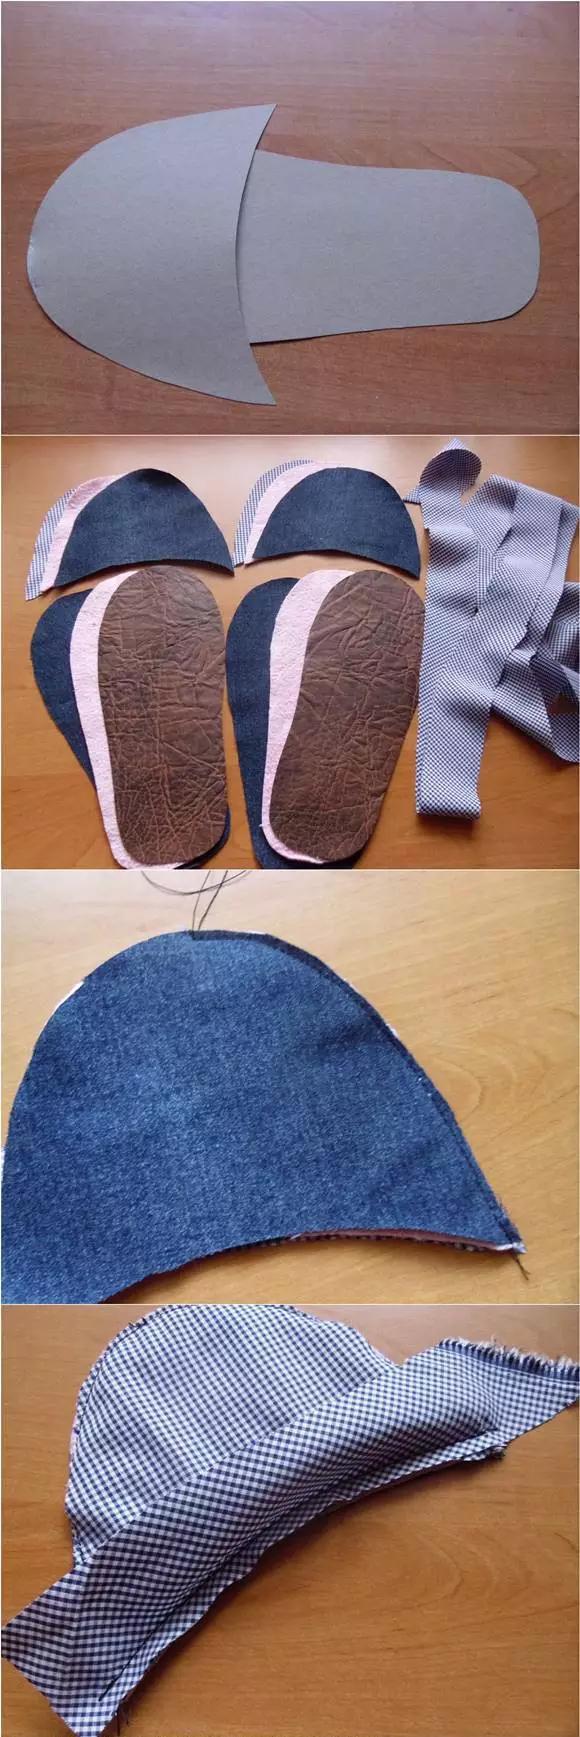 并选择带花色的布条缝在鞋面开口和鞋子边缘侧围,并将多余的布料剪切